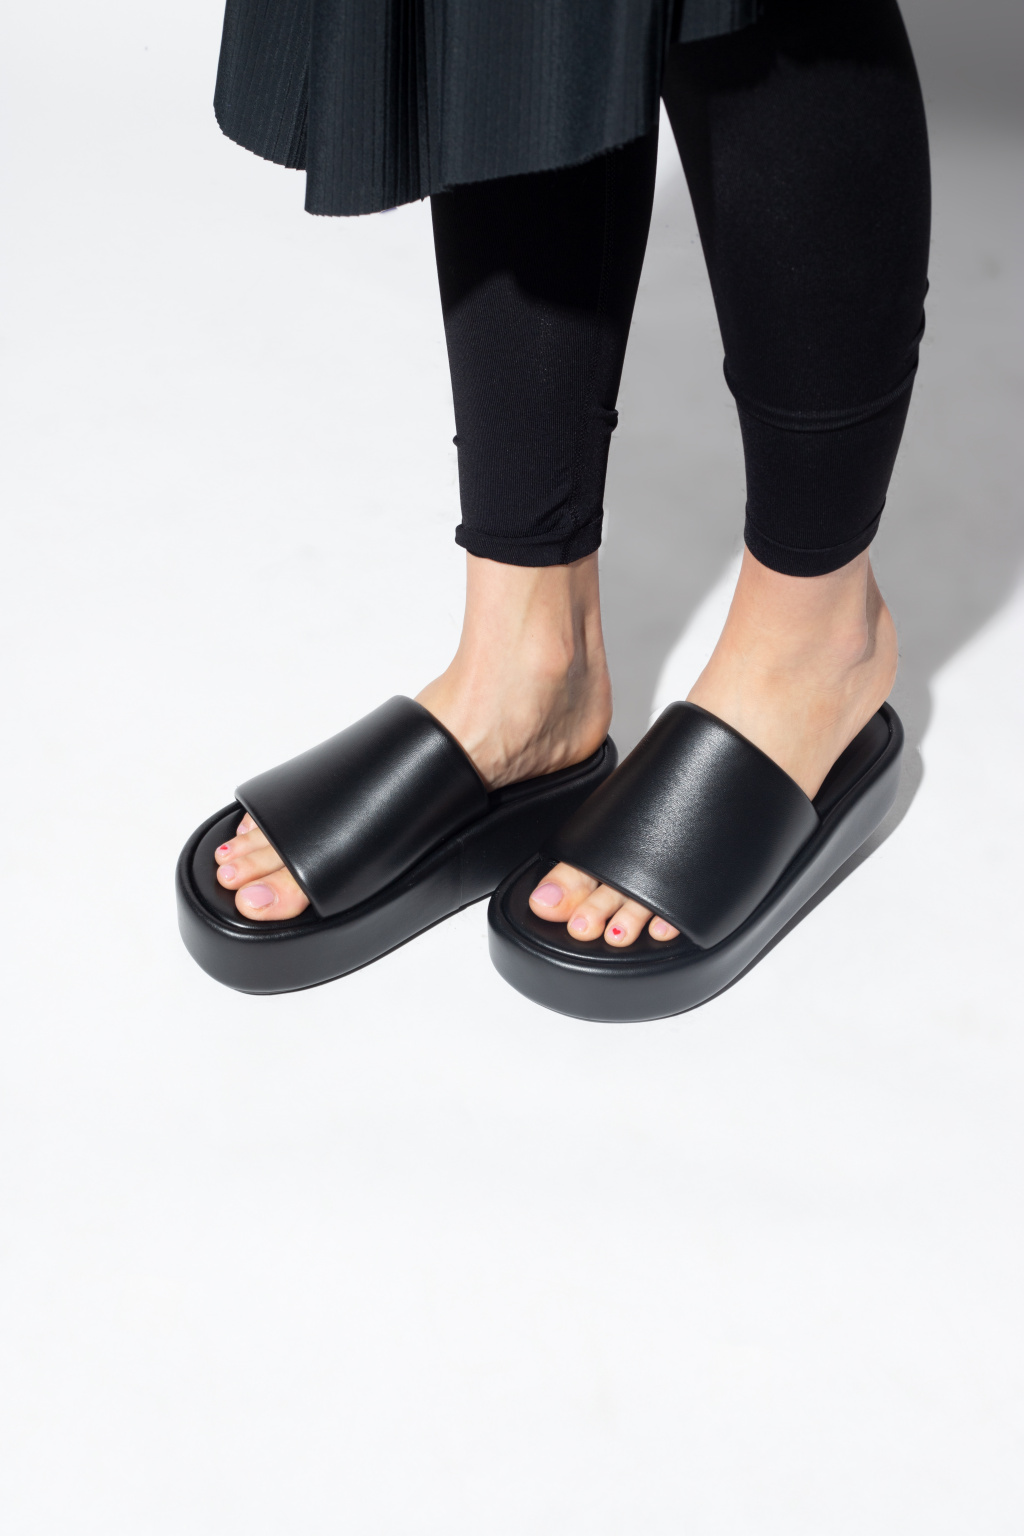 Balenciaga ‘Rise’ leather slides